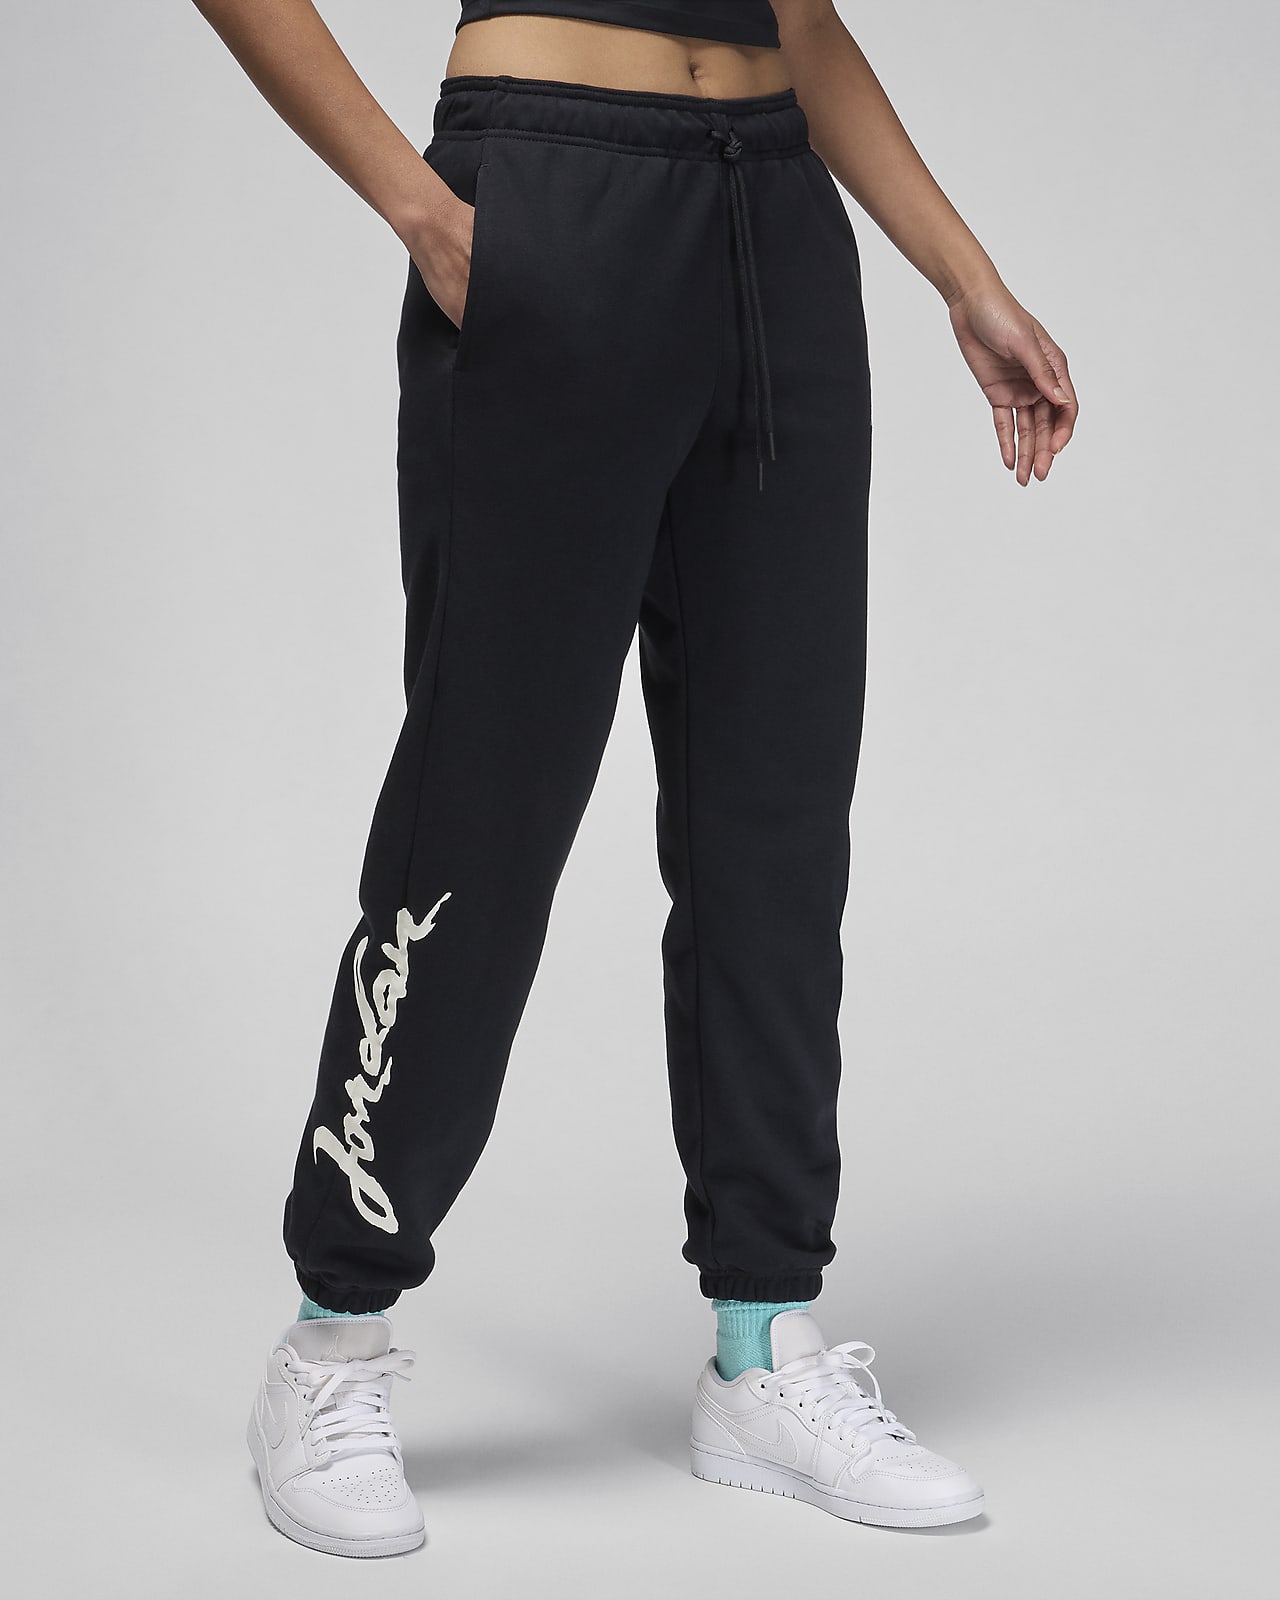 Jordan Brooklyn Fleece Women's Graphic Trousers